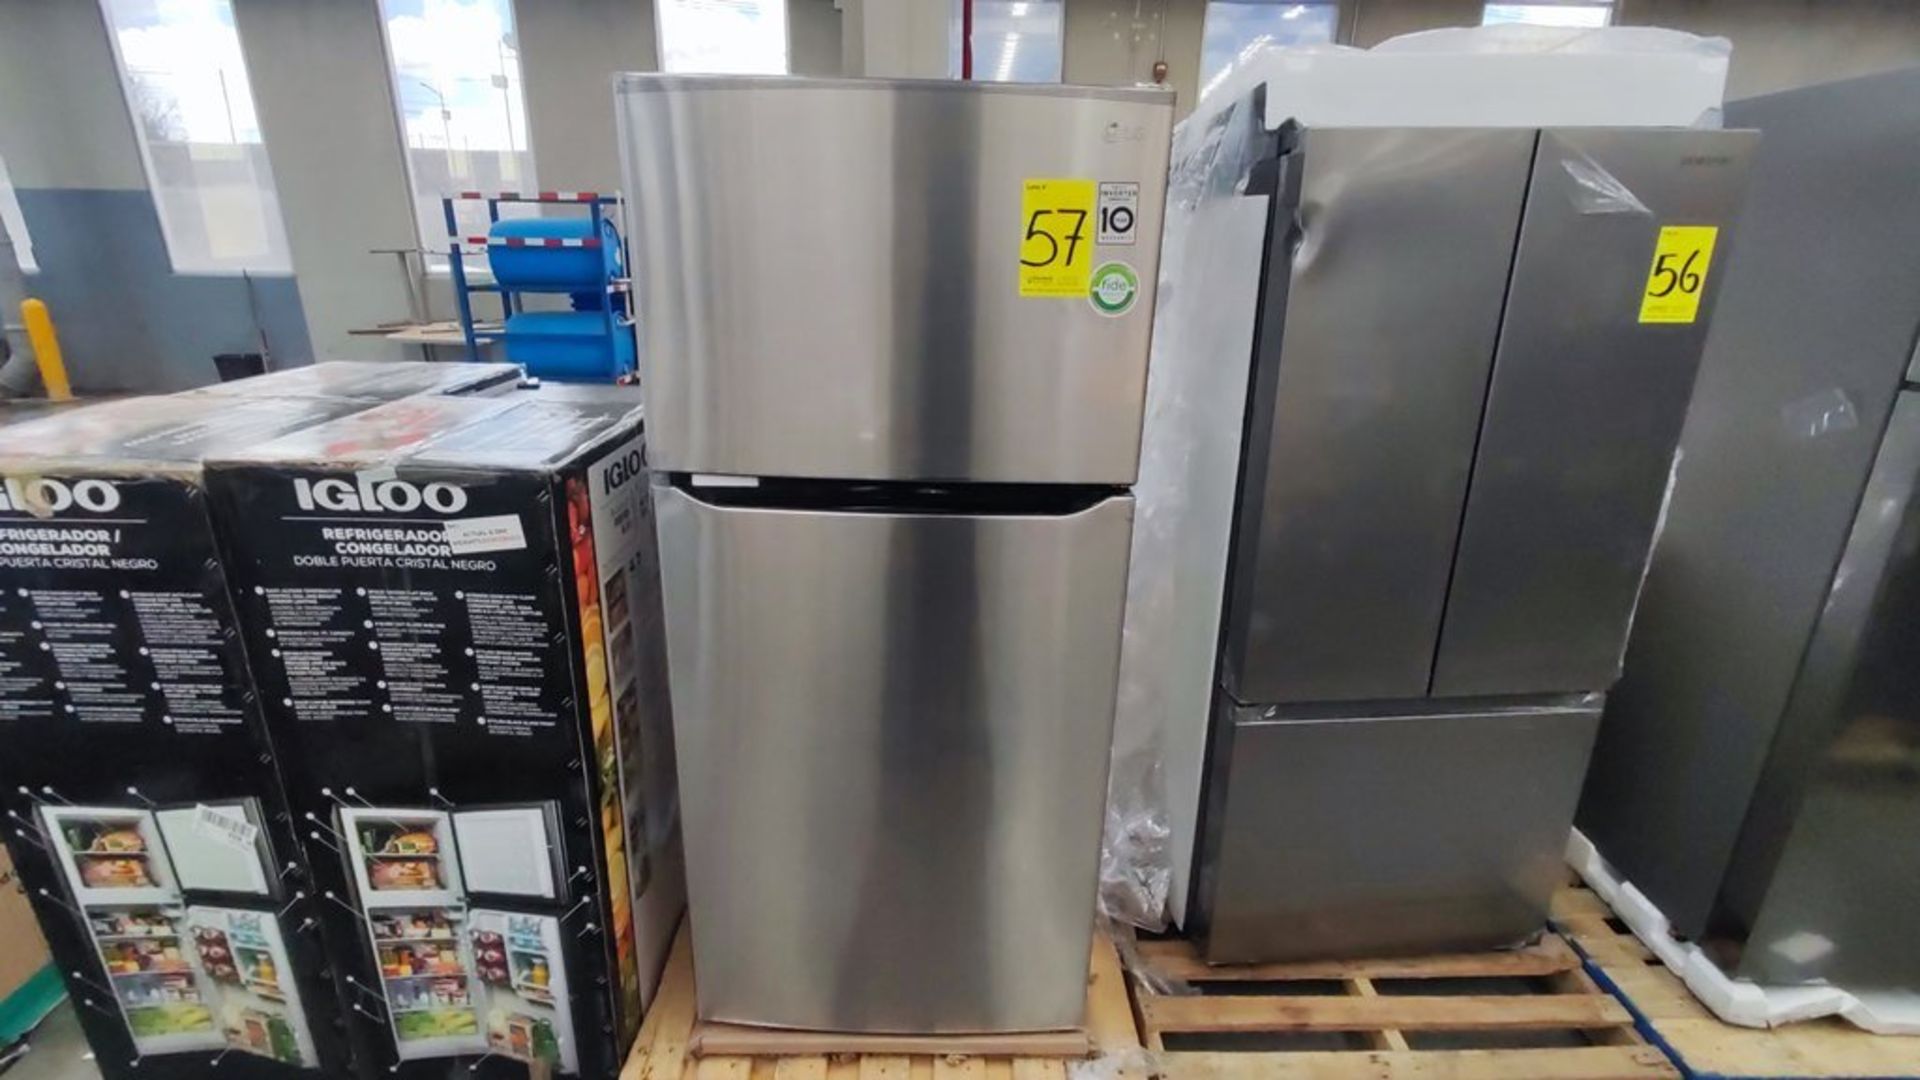 1 Refrigerador Marca LG, Modelo LT57BPSX, Serie 112MRVY1P862, Color Gris, Favor de inspeccionar. (N